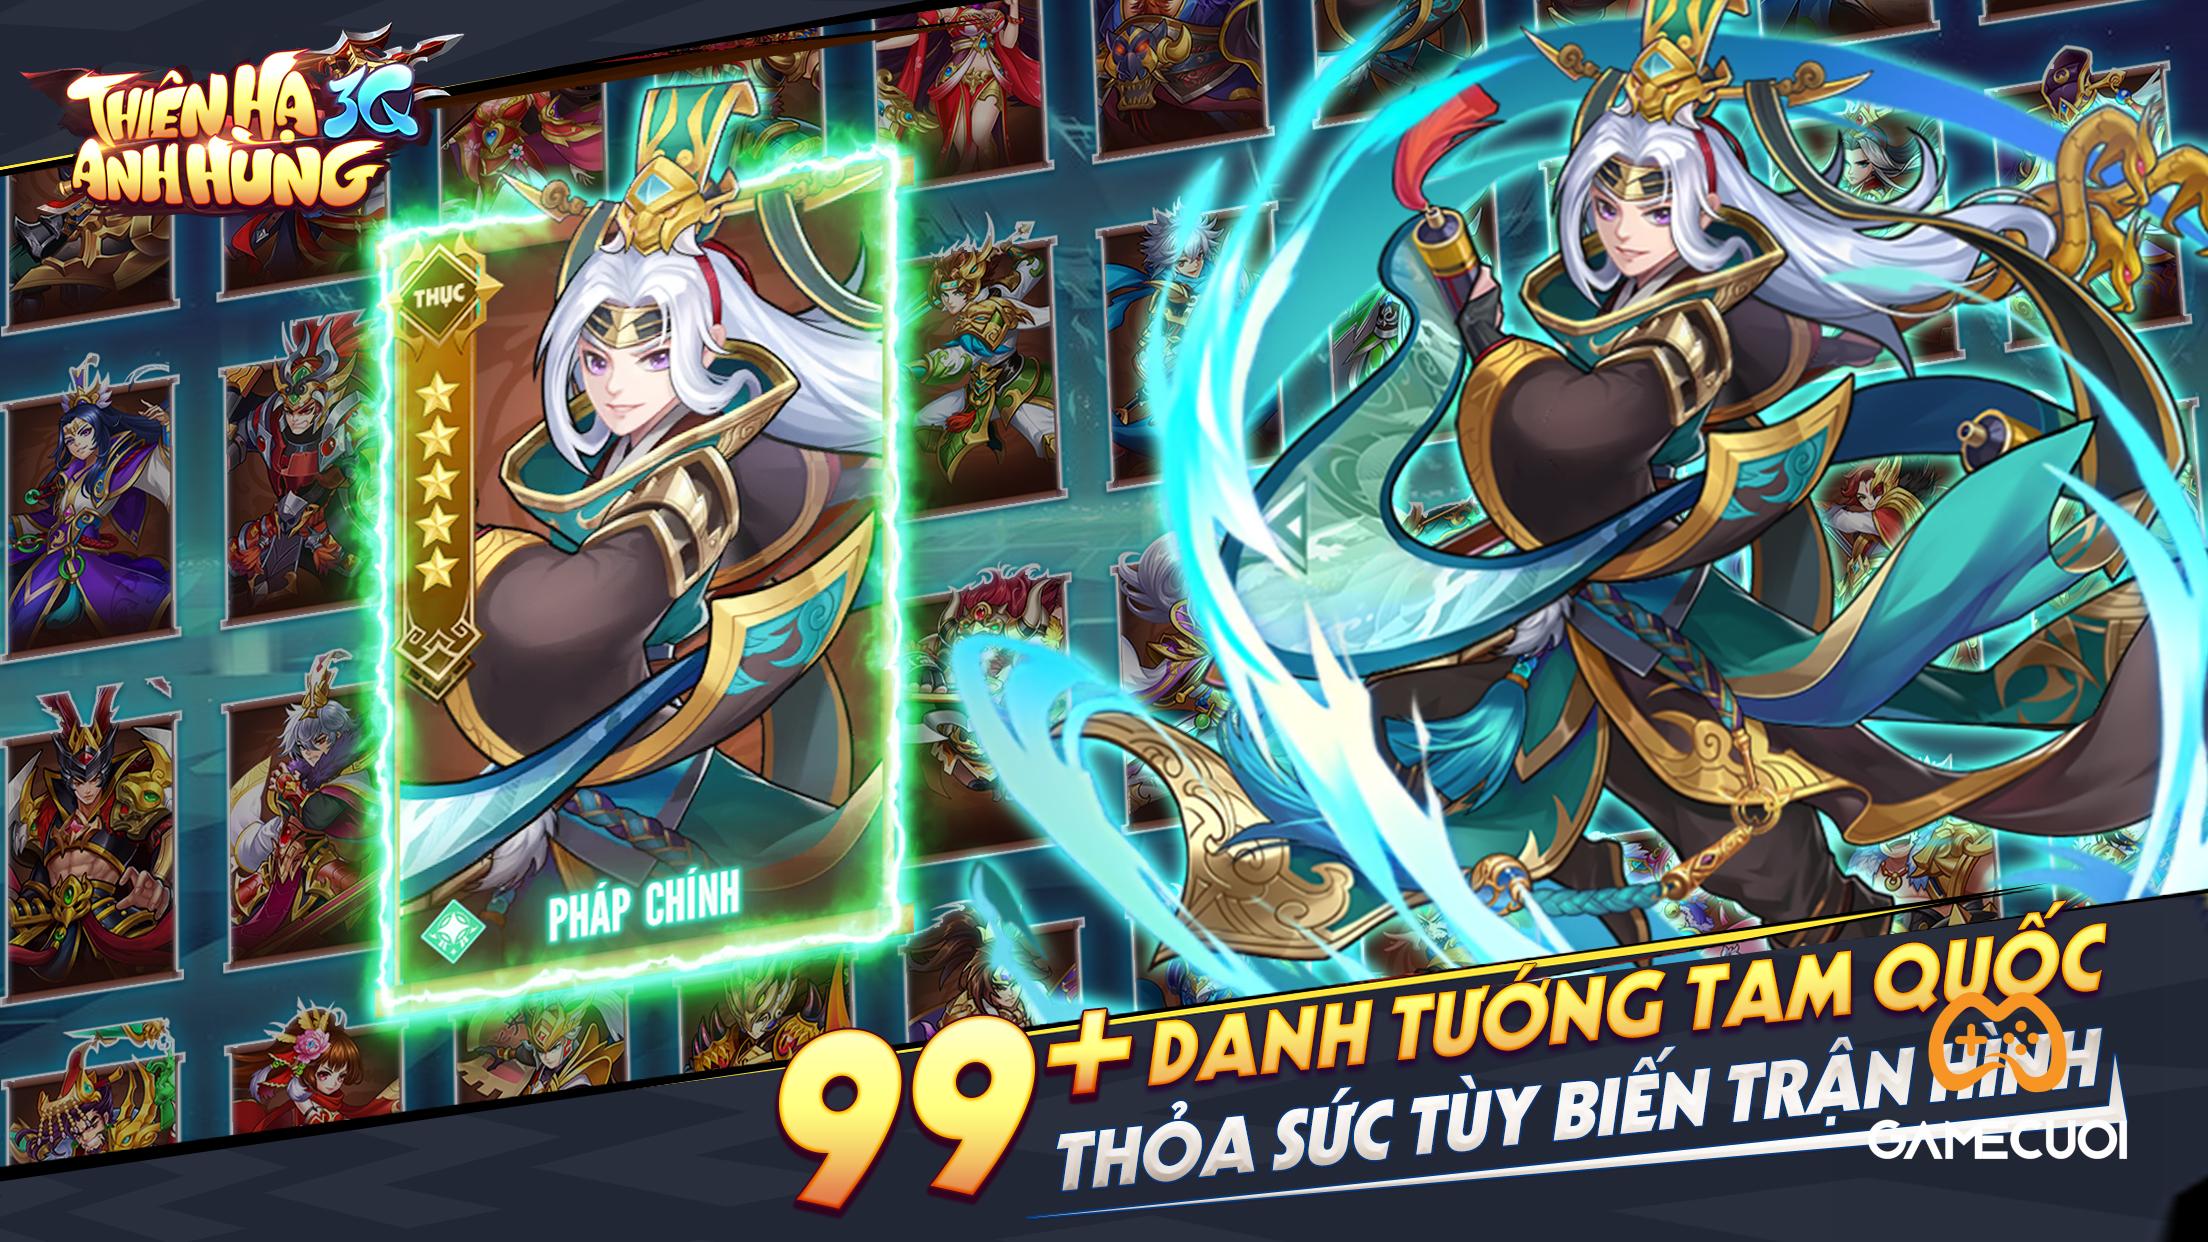 Thiên Hạ Anh Hùng 3Q – Tựa game chiến thuật Tam Quốc “made in Việt Nam” sẽ ra mắt vào tháng 11